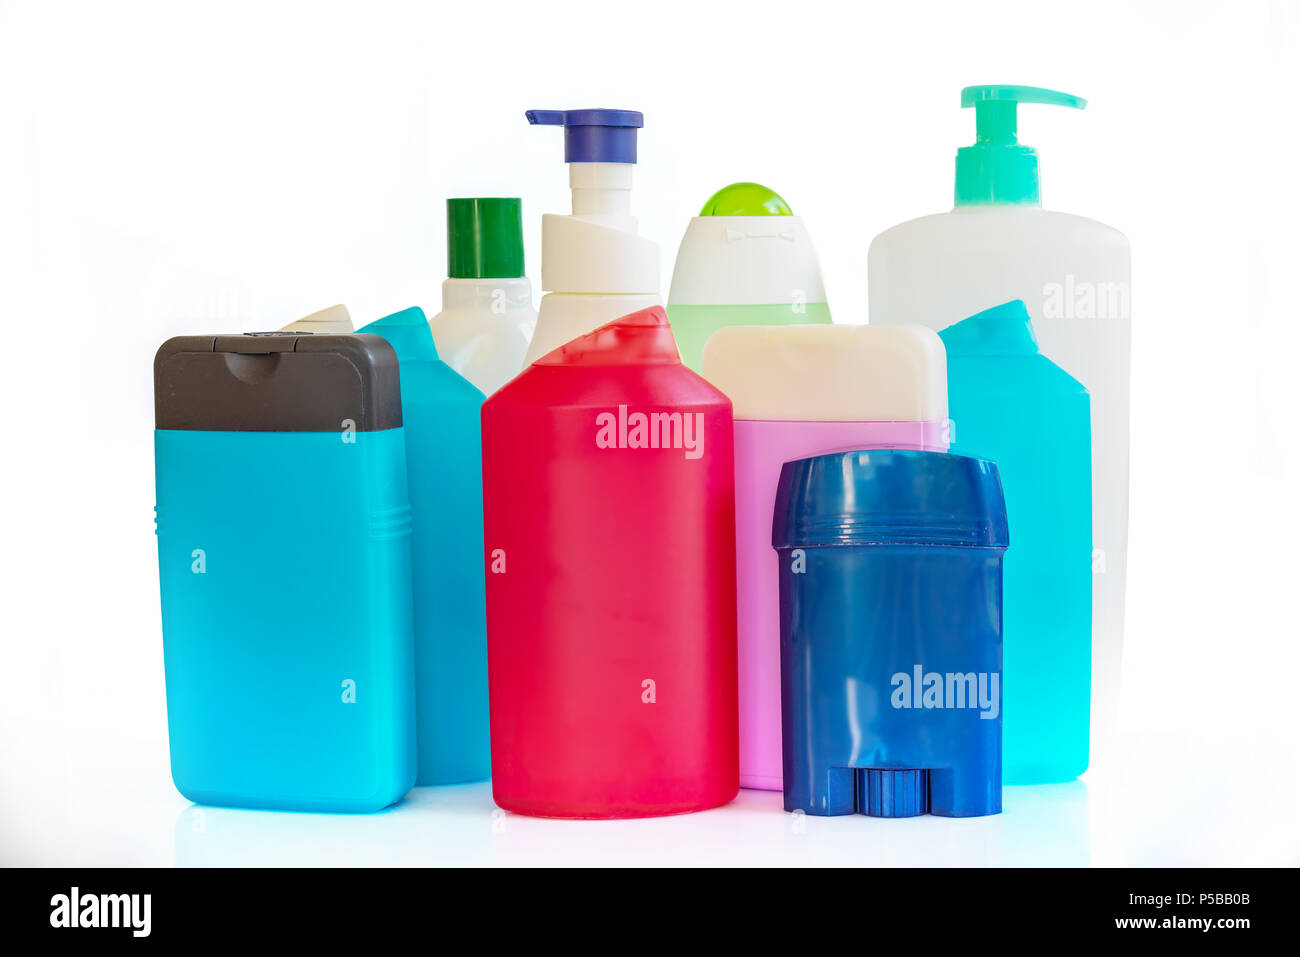 Collection de bouteilles et contenants de plastique colorés de produits d'hygiène Banque D'Images